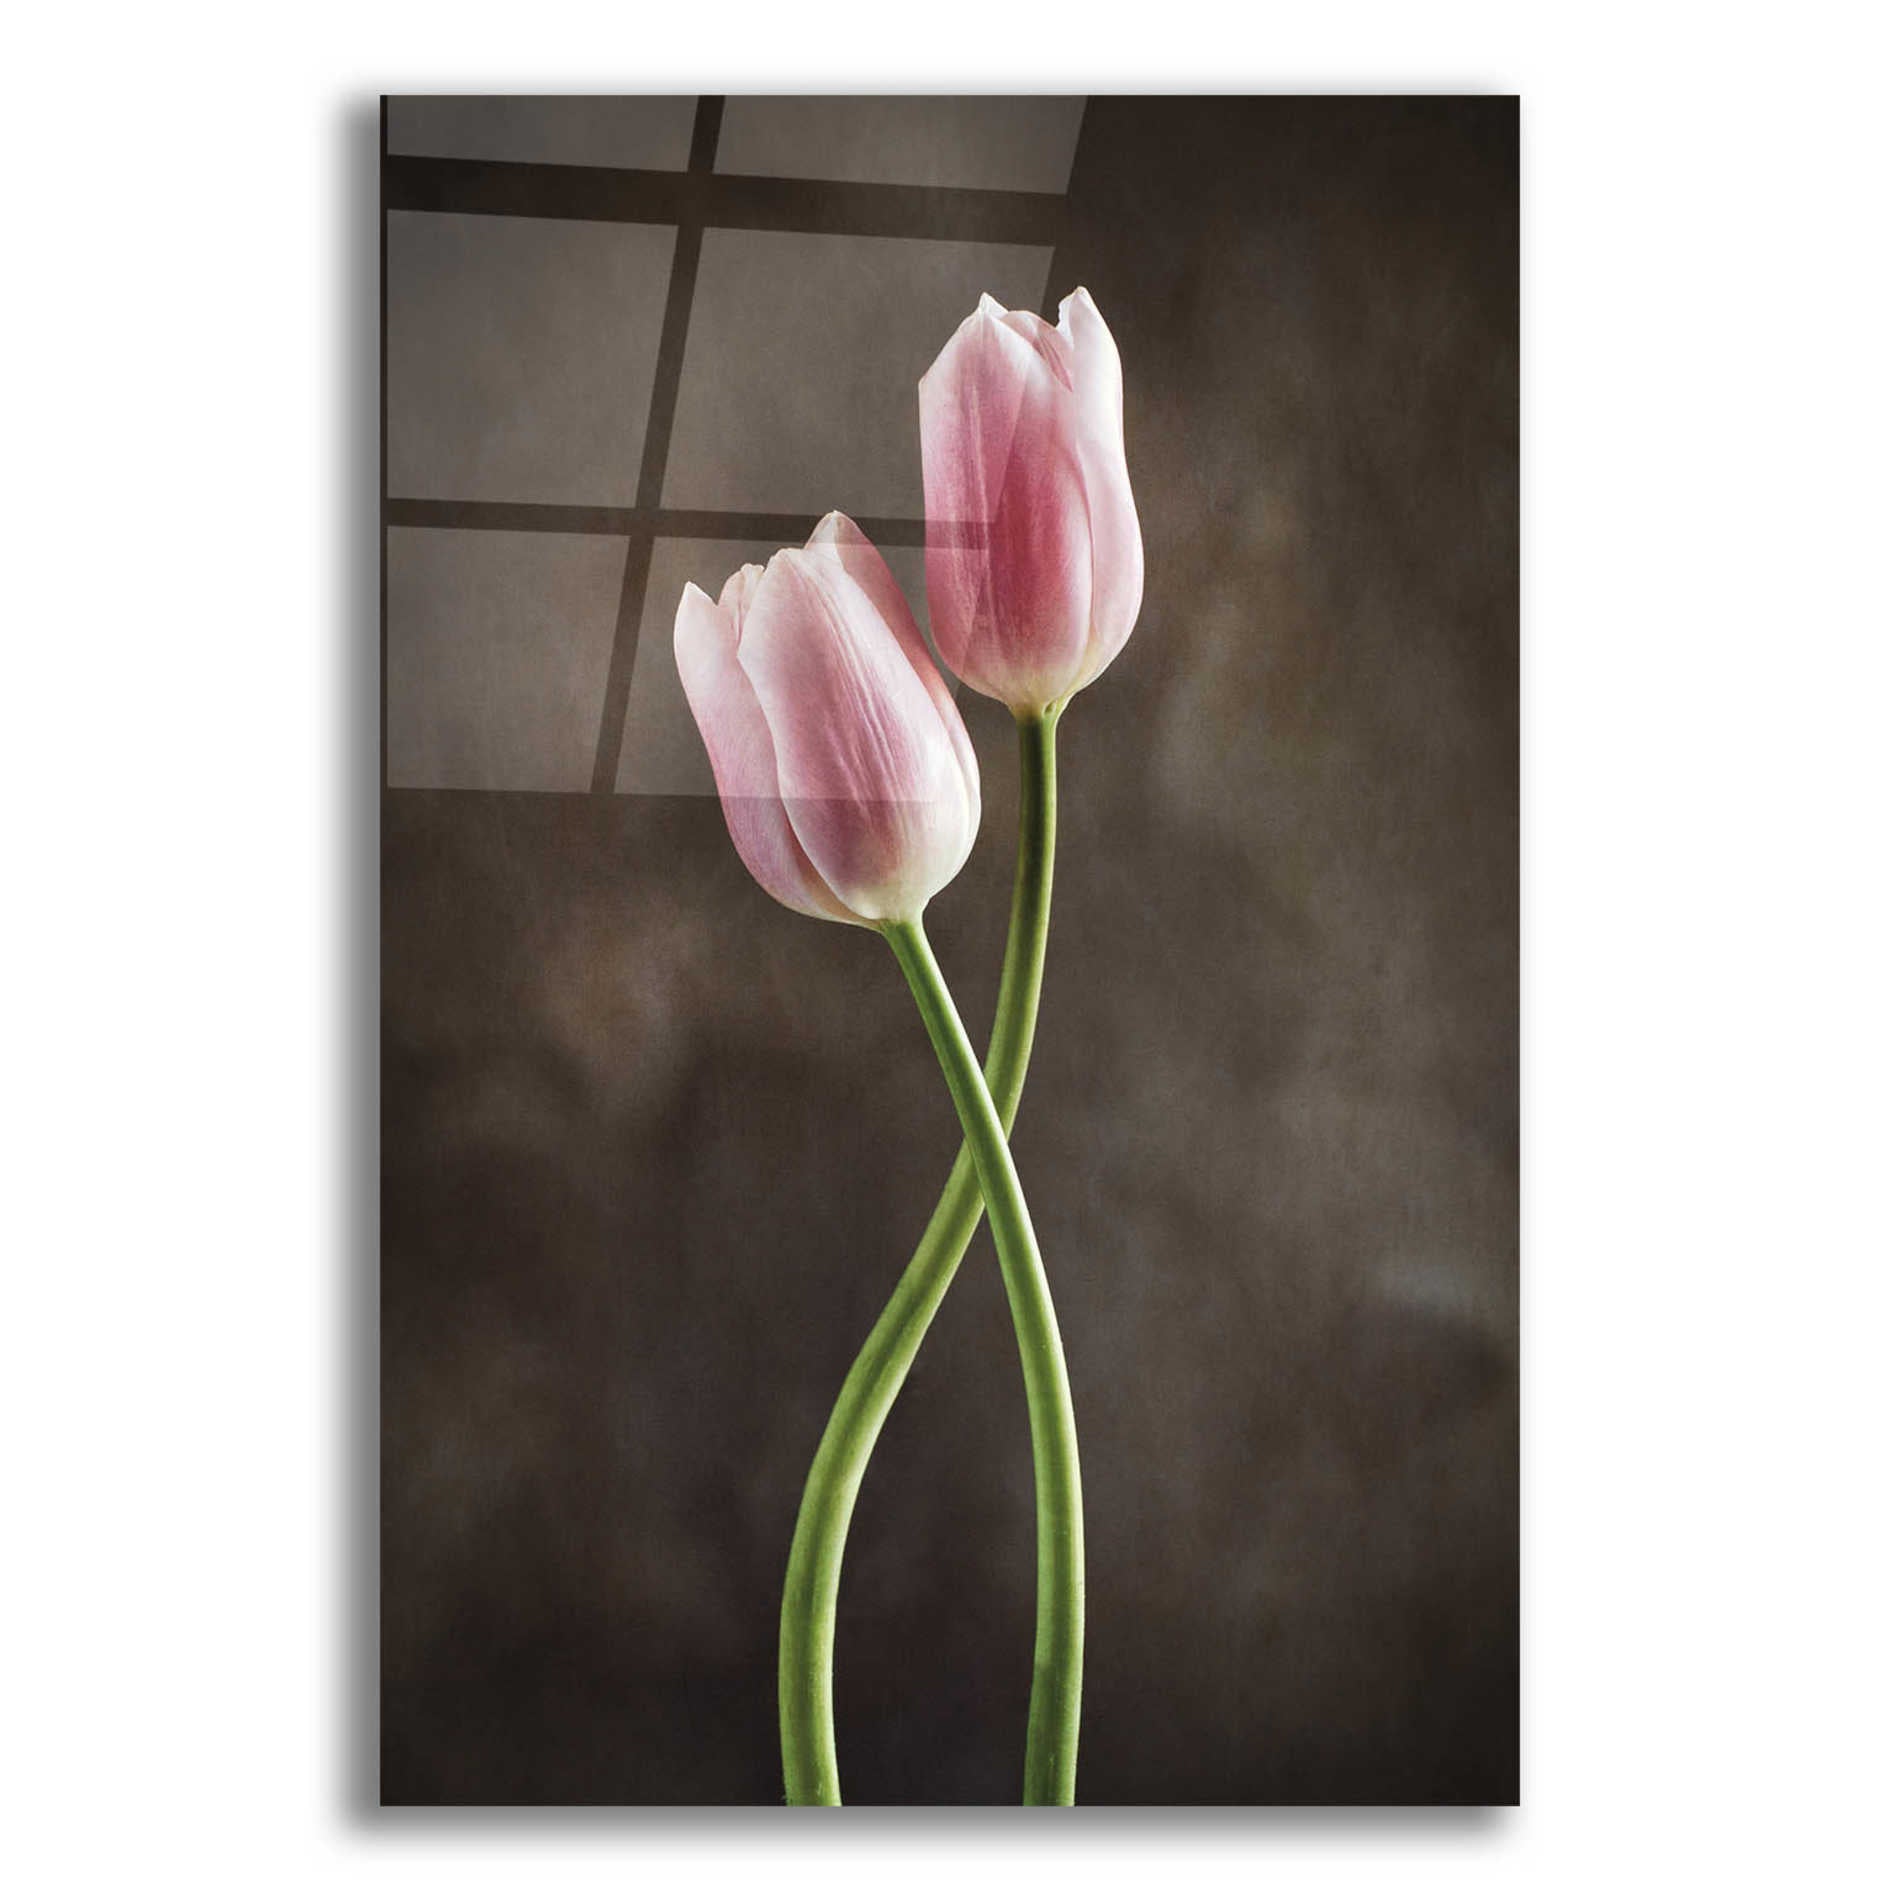 Epic Art 'Spring Tulips V' by Debra Van Swearingen, Acrylic Glass Wall Art,12x16